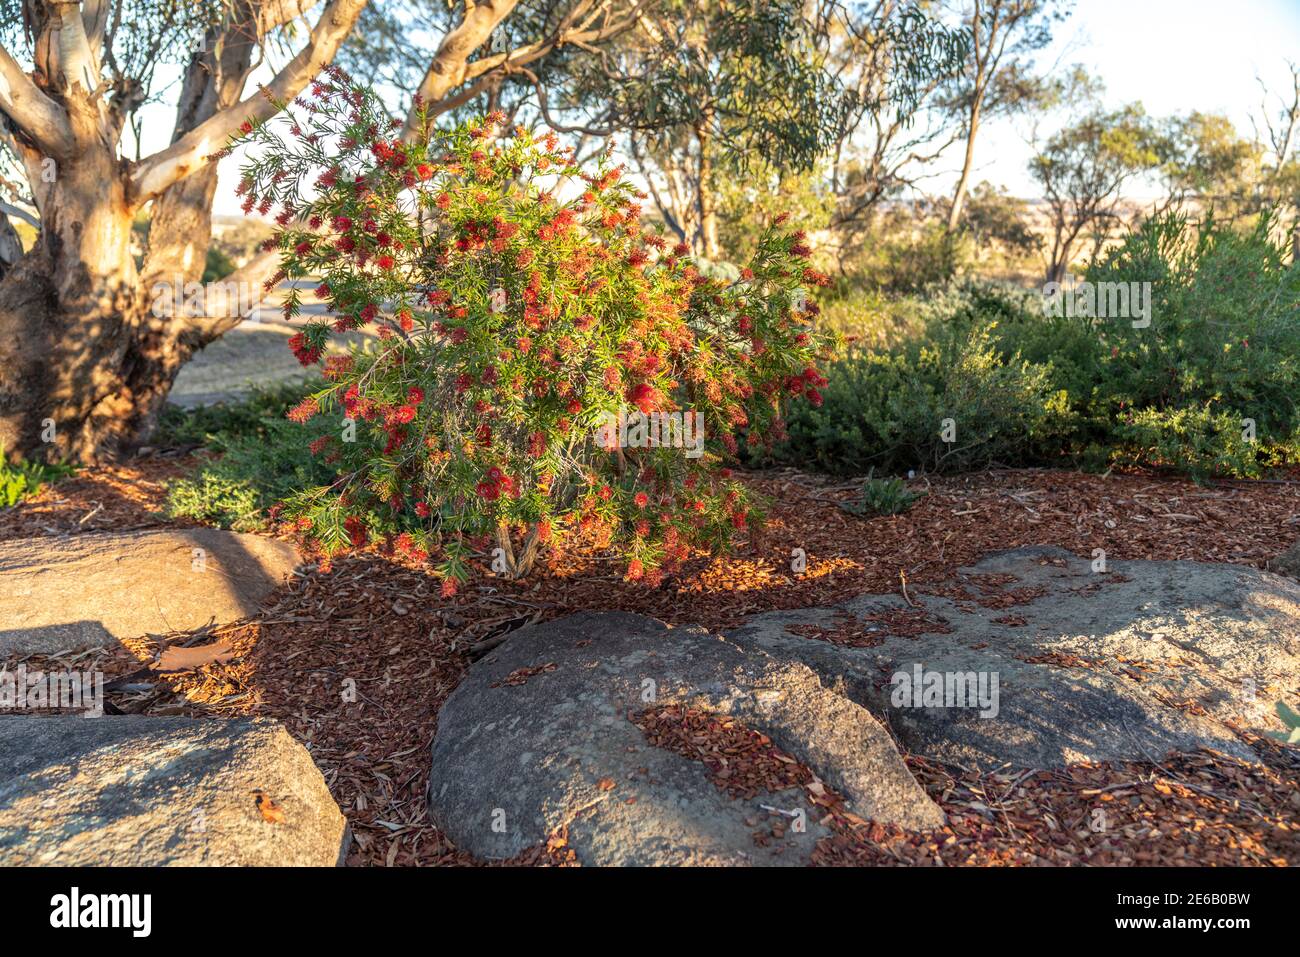 Callistemon, Bottlebrush shrubs in a Landscaped Australian Native Plant Garden Stock Photo